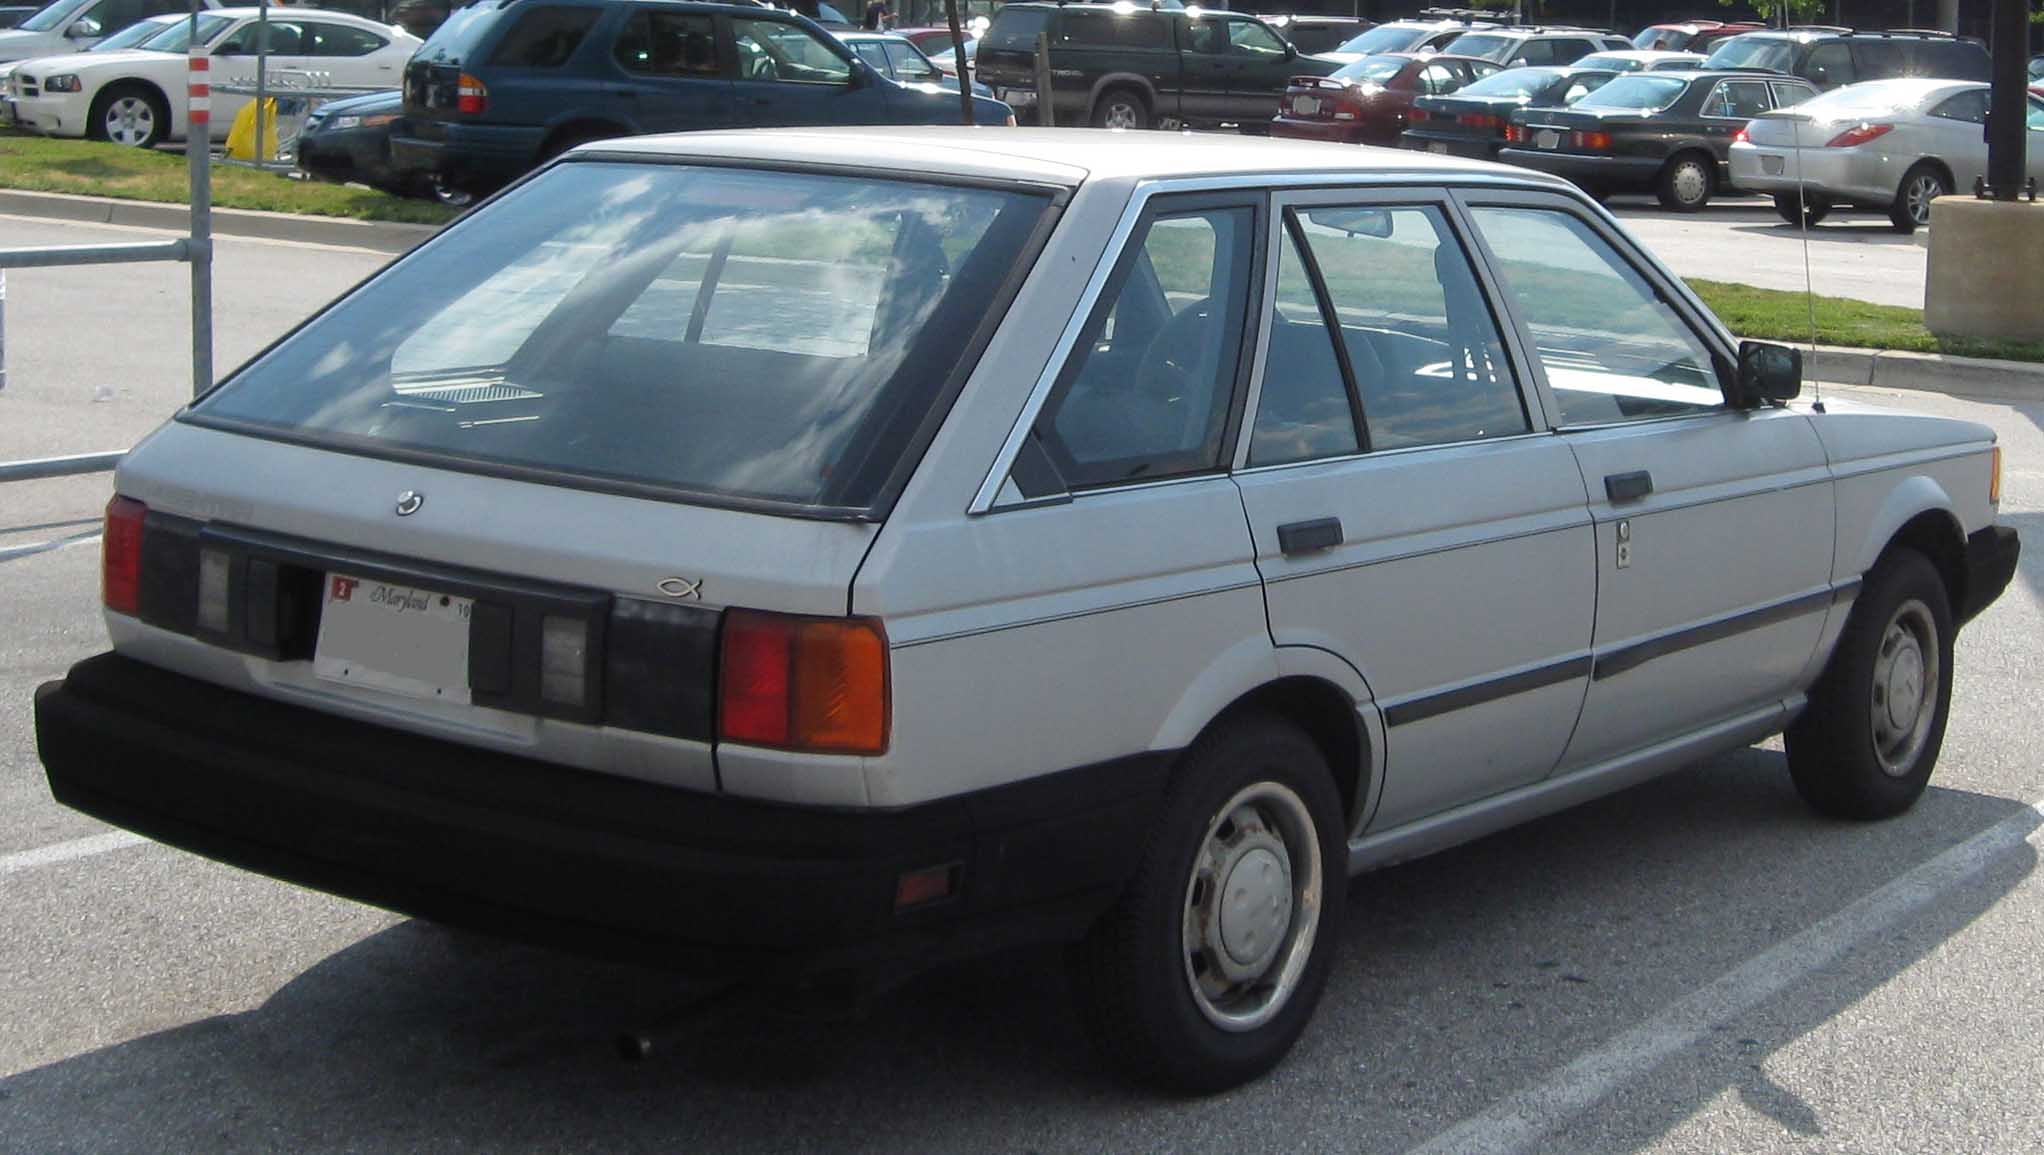 1988 Nissan sentra hatchback